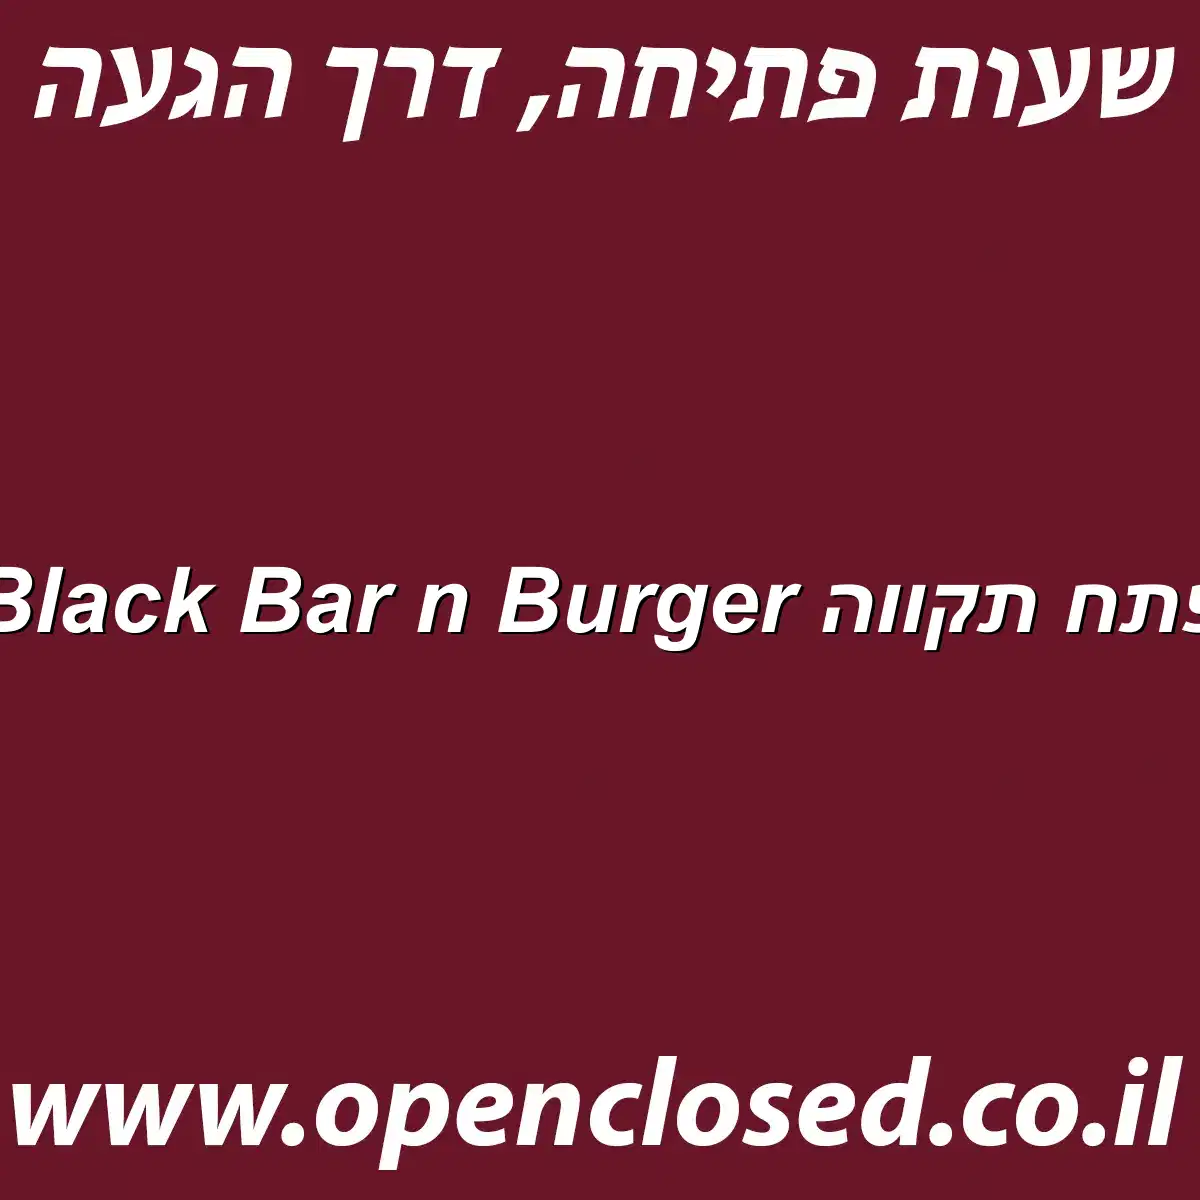 Black Bar n Burger פתח תקווה